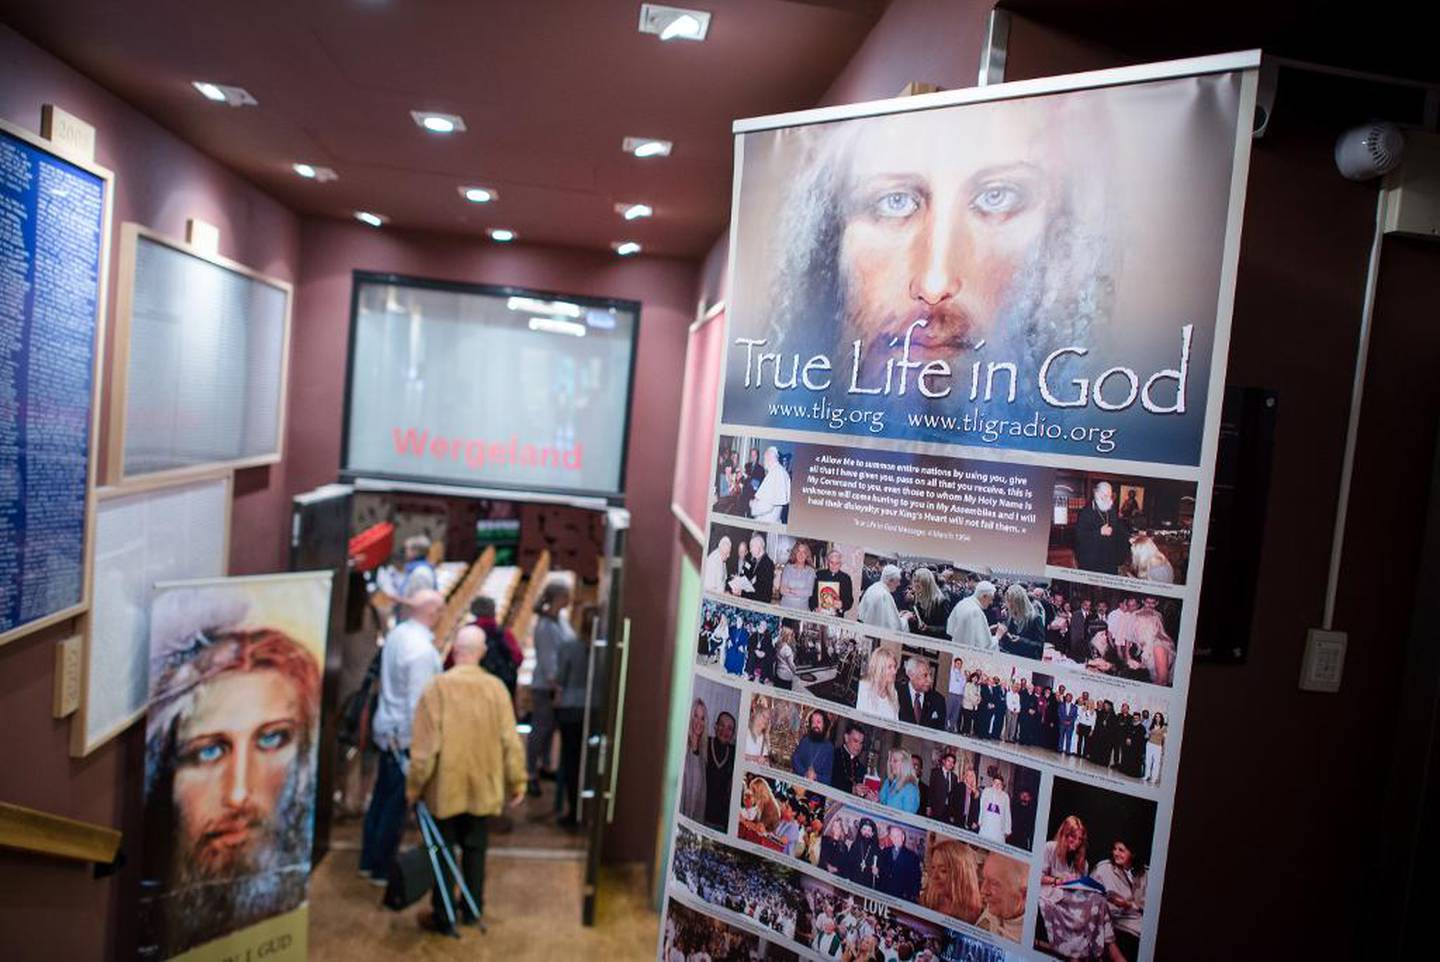 En plakat ved inngangen til møtet viser bilder av Vassula Rydén som møter folkemasser og kirkelige ledere over hele verden.